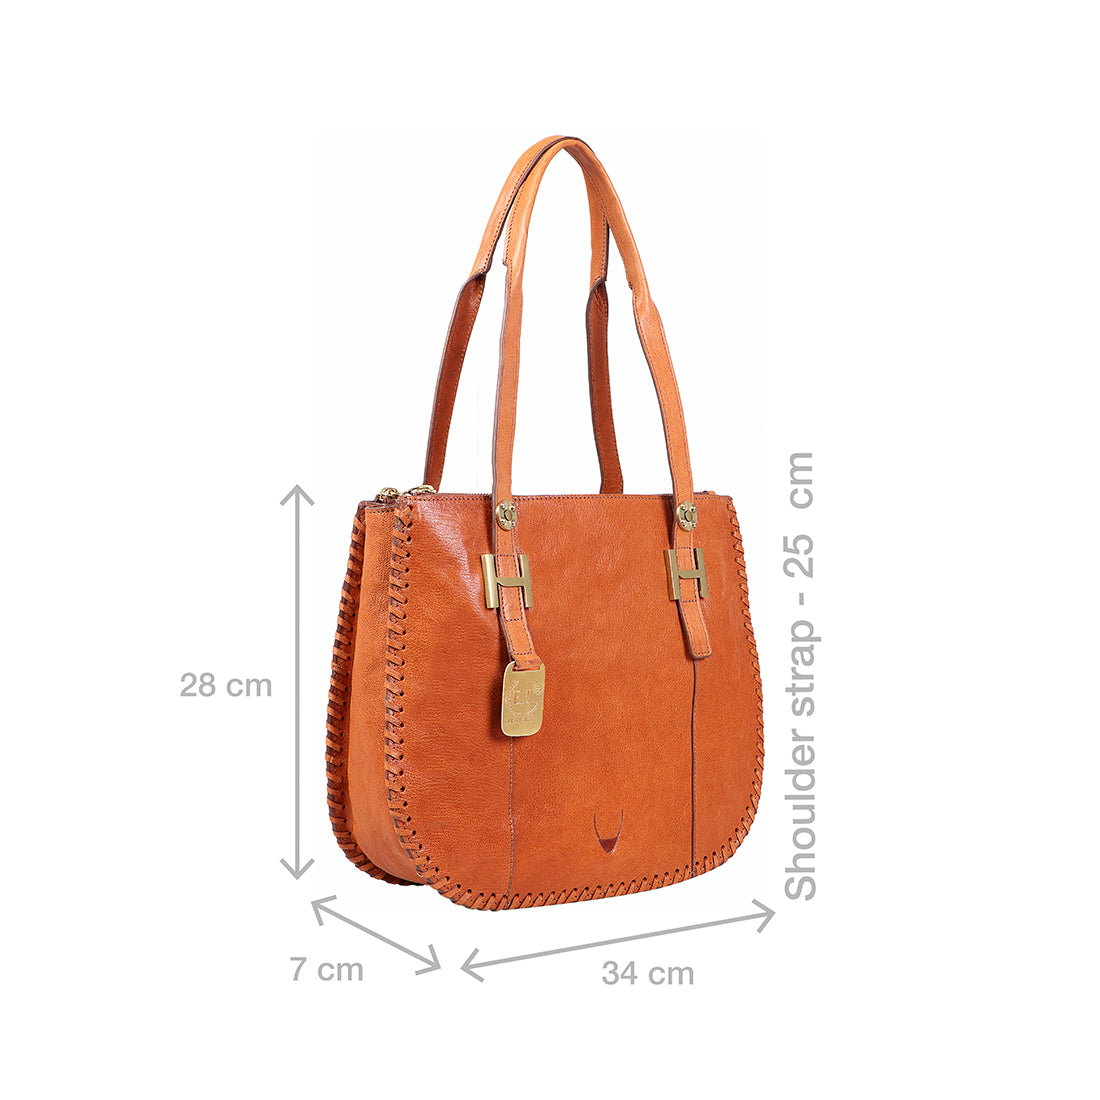 Buy Tan Hope 03 Tote Bag Online - Hidesign